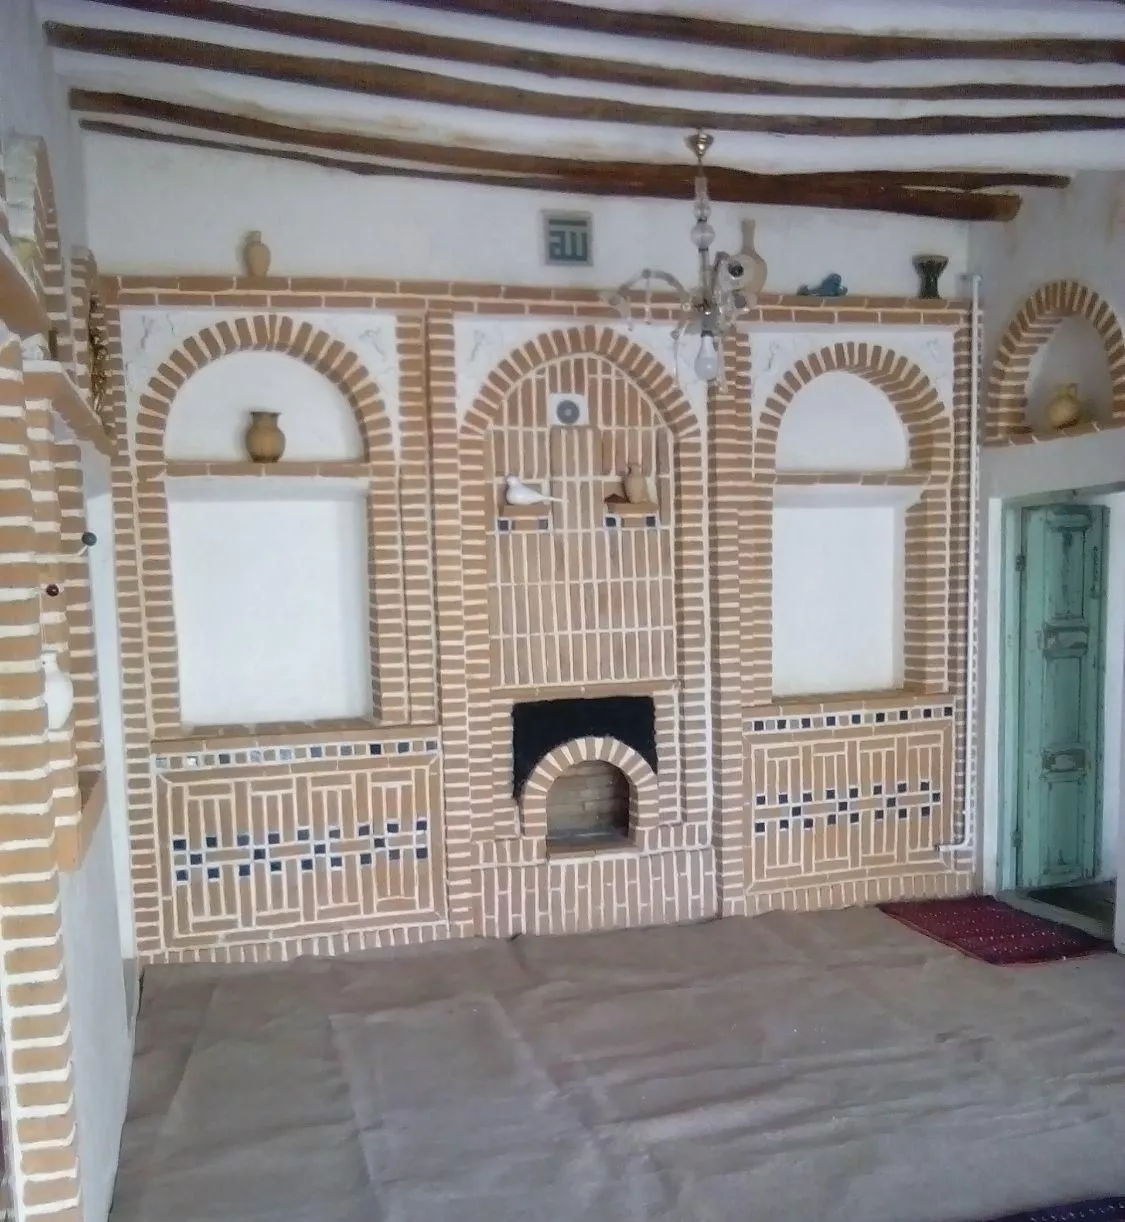 خانه قدیمی دوره قاجاریه